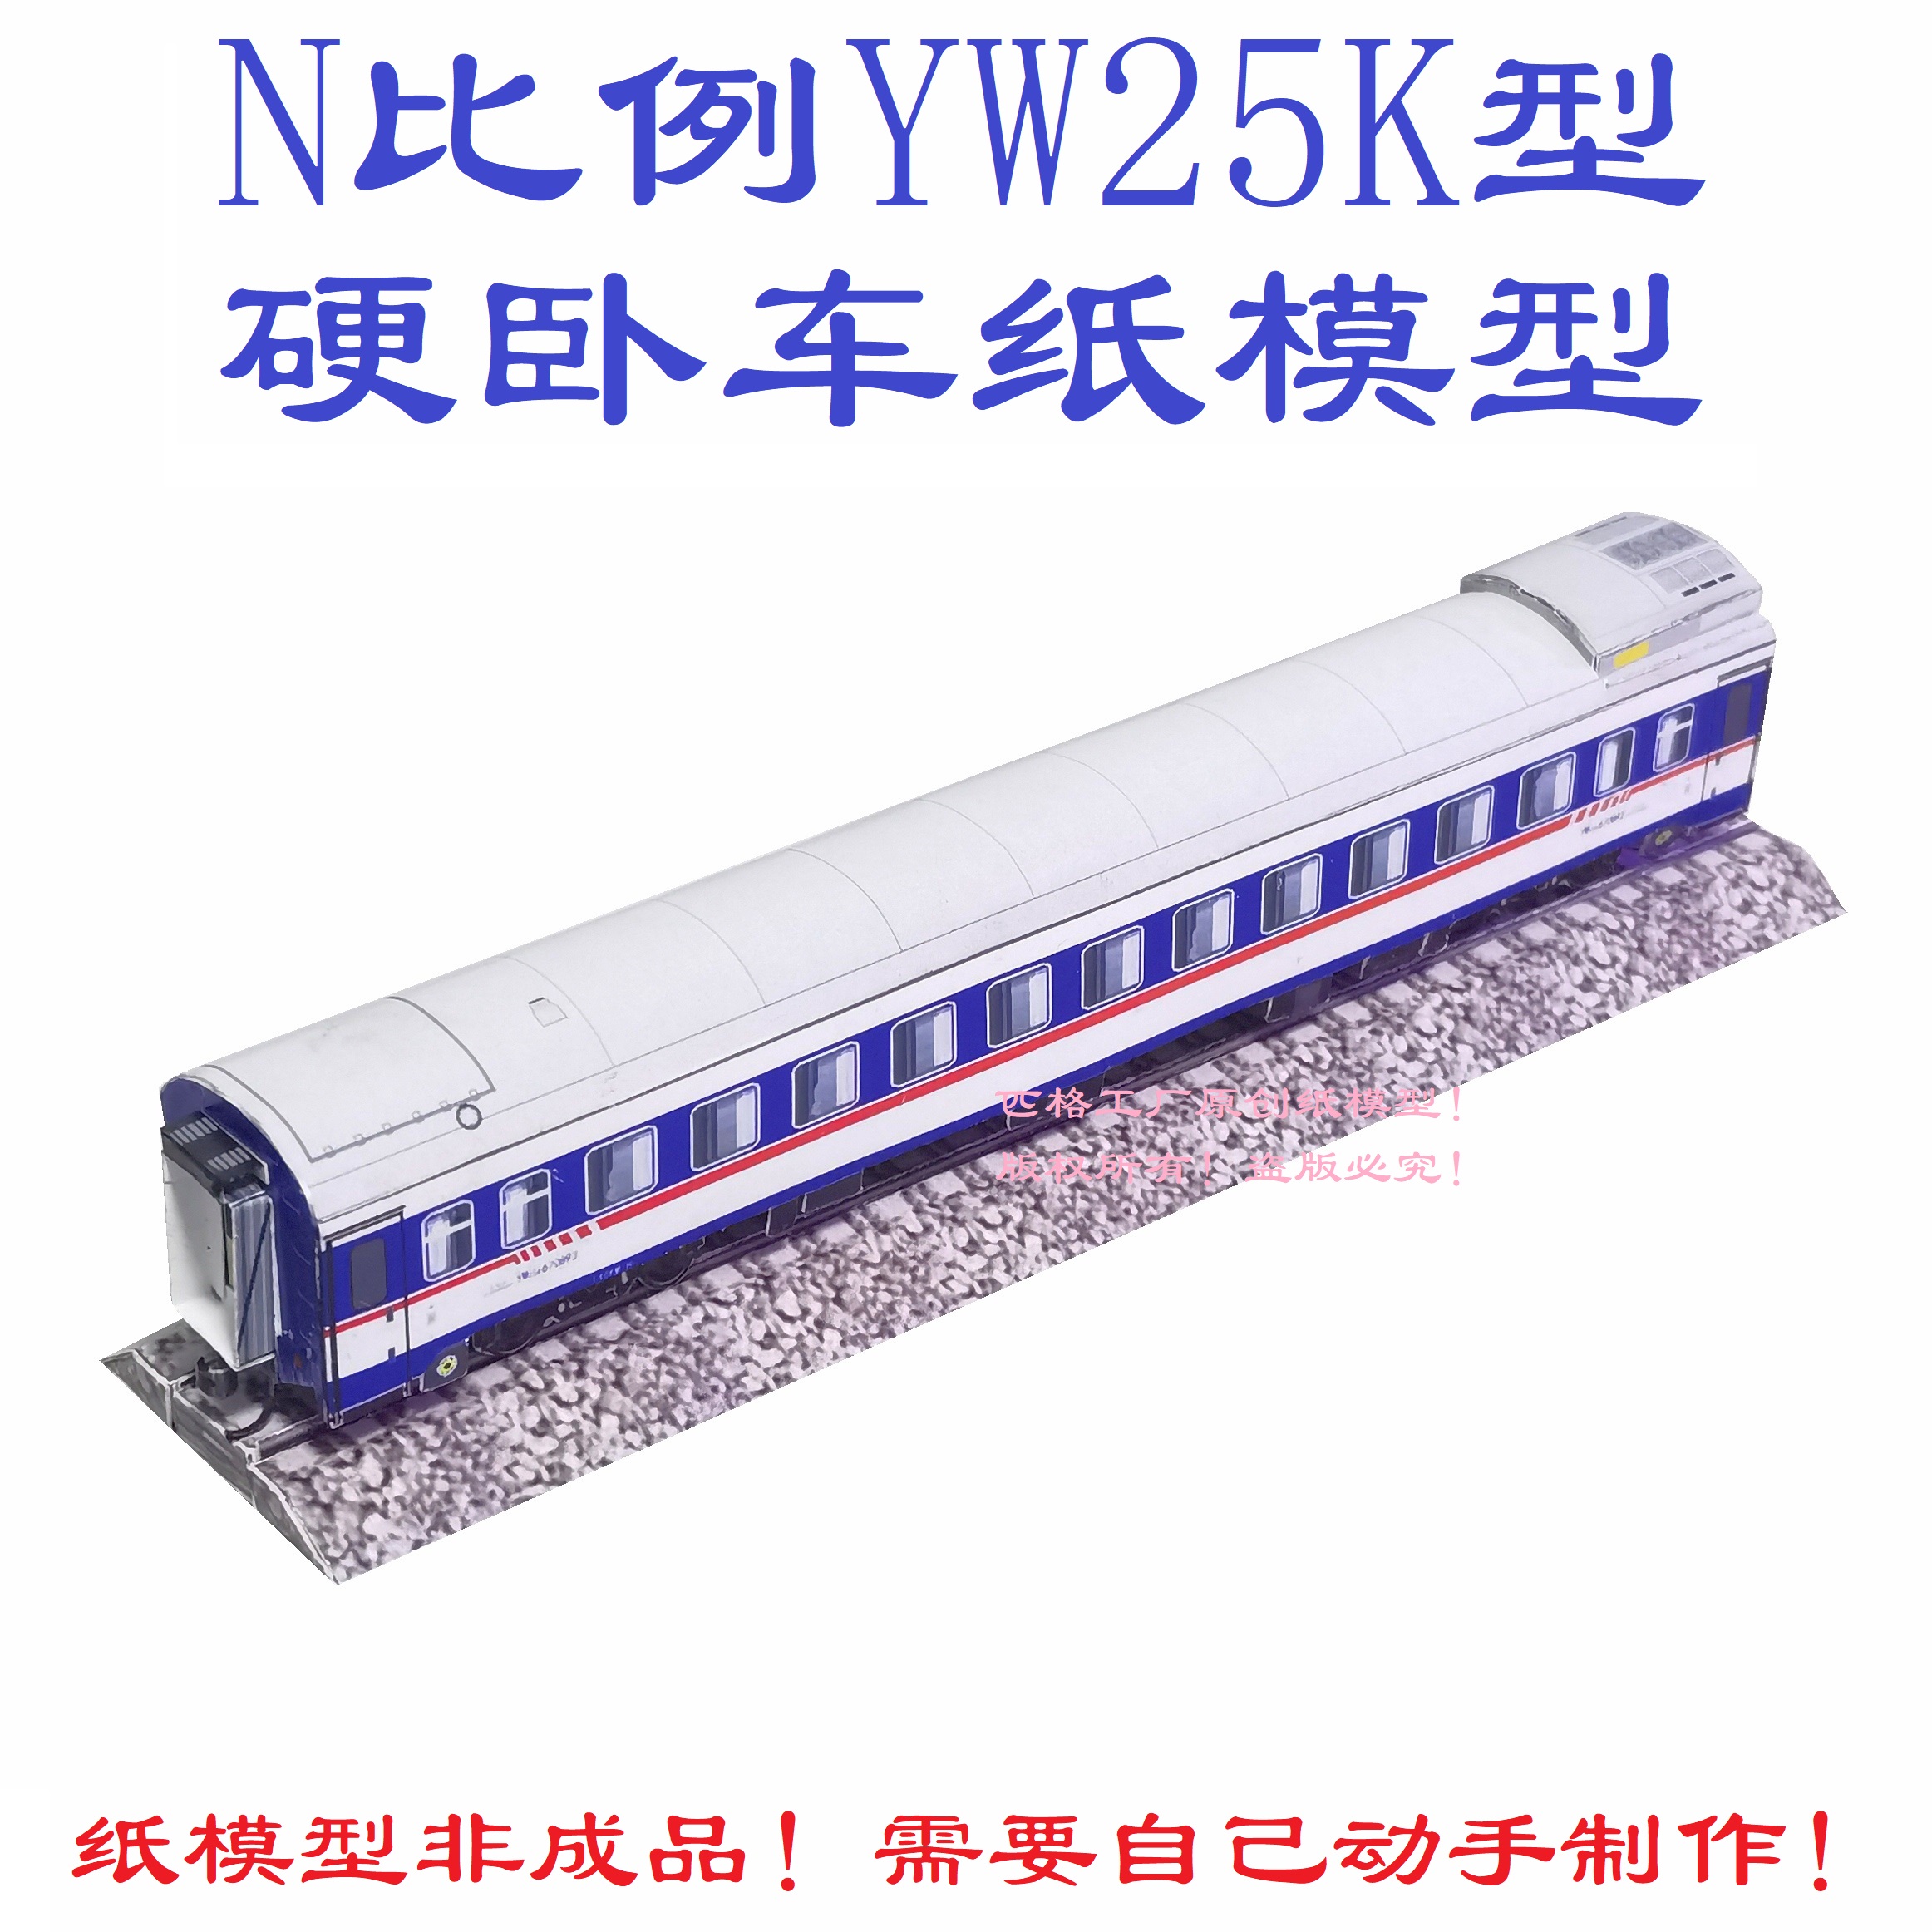 匹格工厂N比例YW25K硬卧车模型3D纸模型DIY手工铁路高铁火车模型